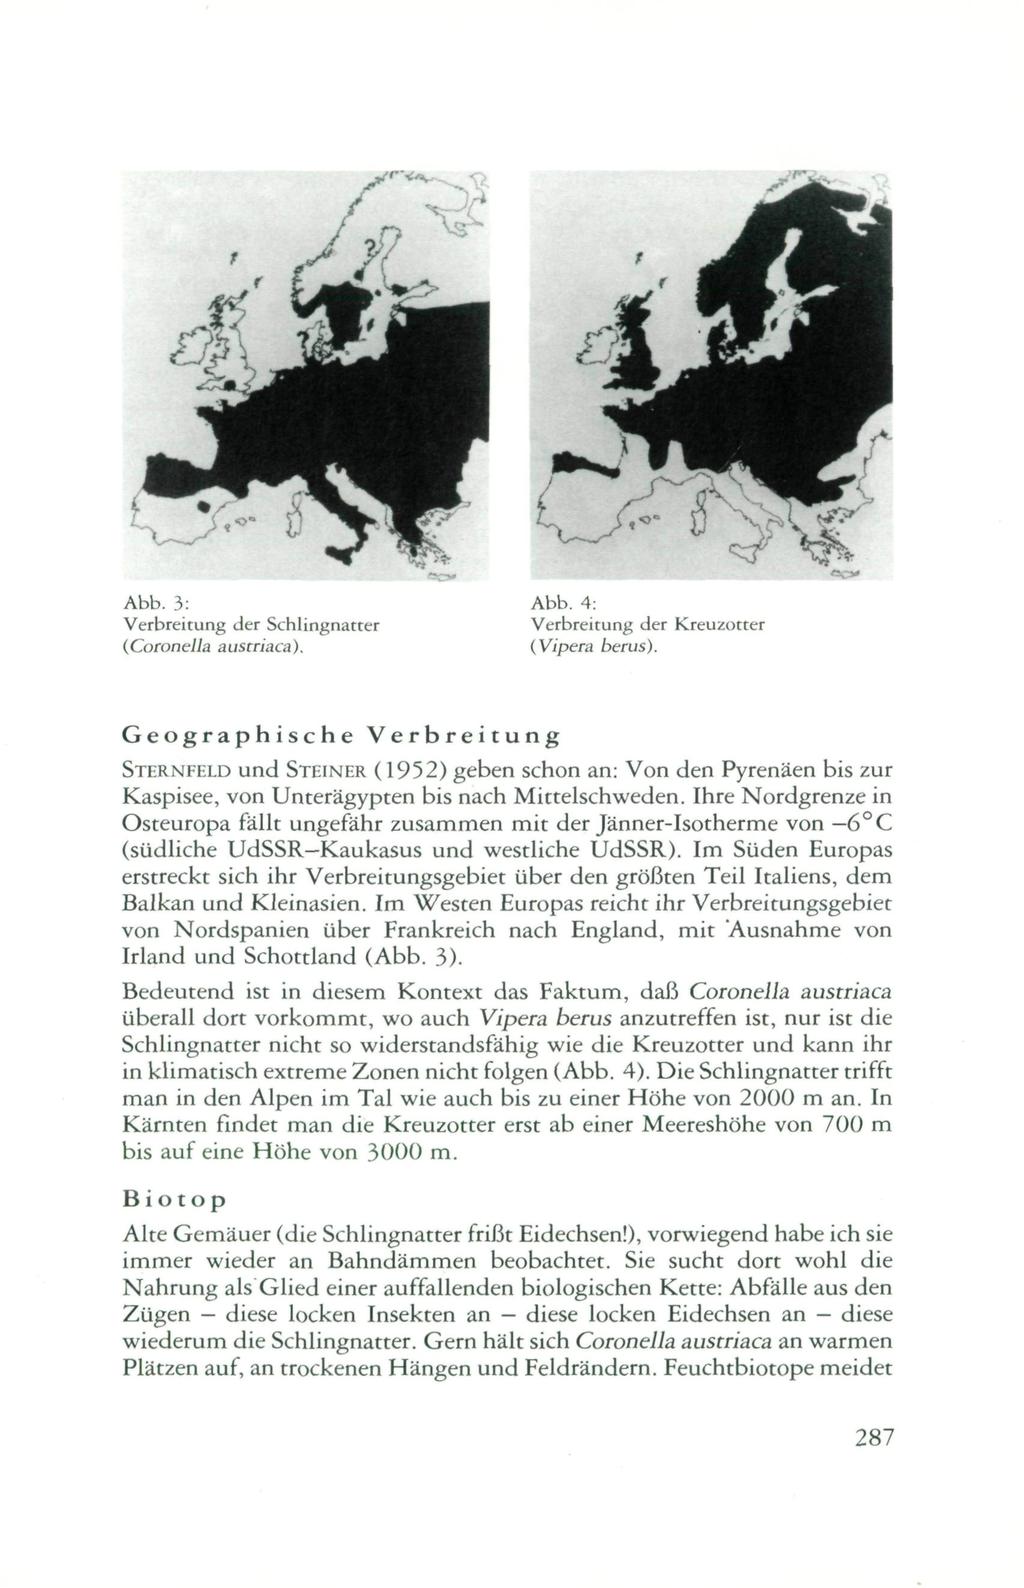 Abb. 3: Verbreitung der Schlingnatter (Coronella austriaca). Abb. 4: Verbreitung der Kreuzotter {Vipera berus).